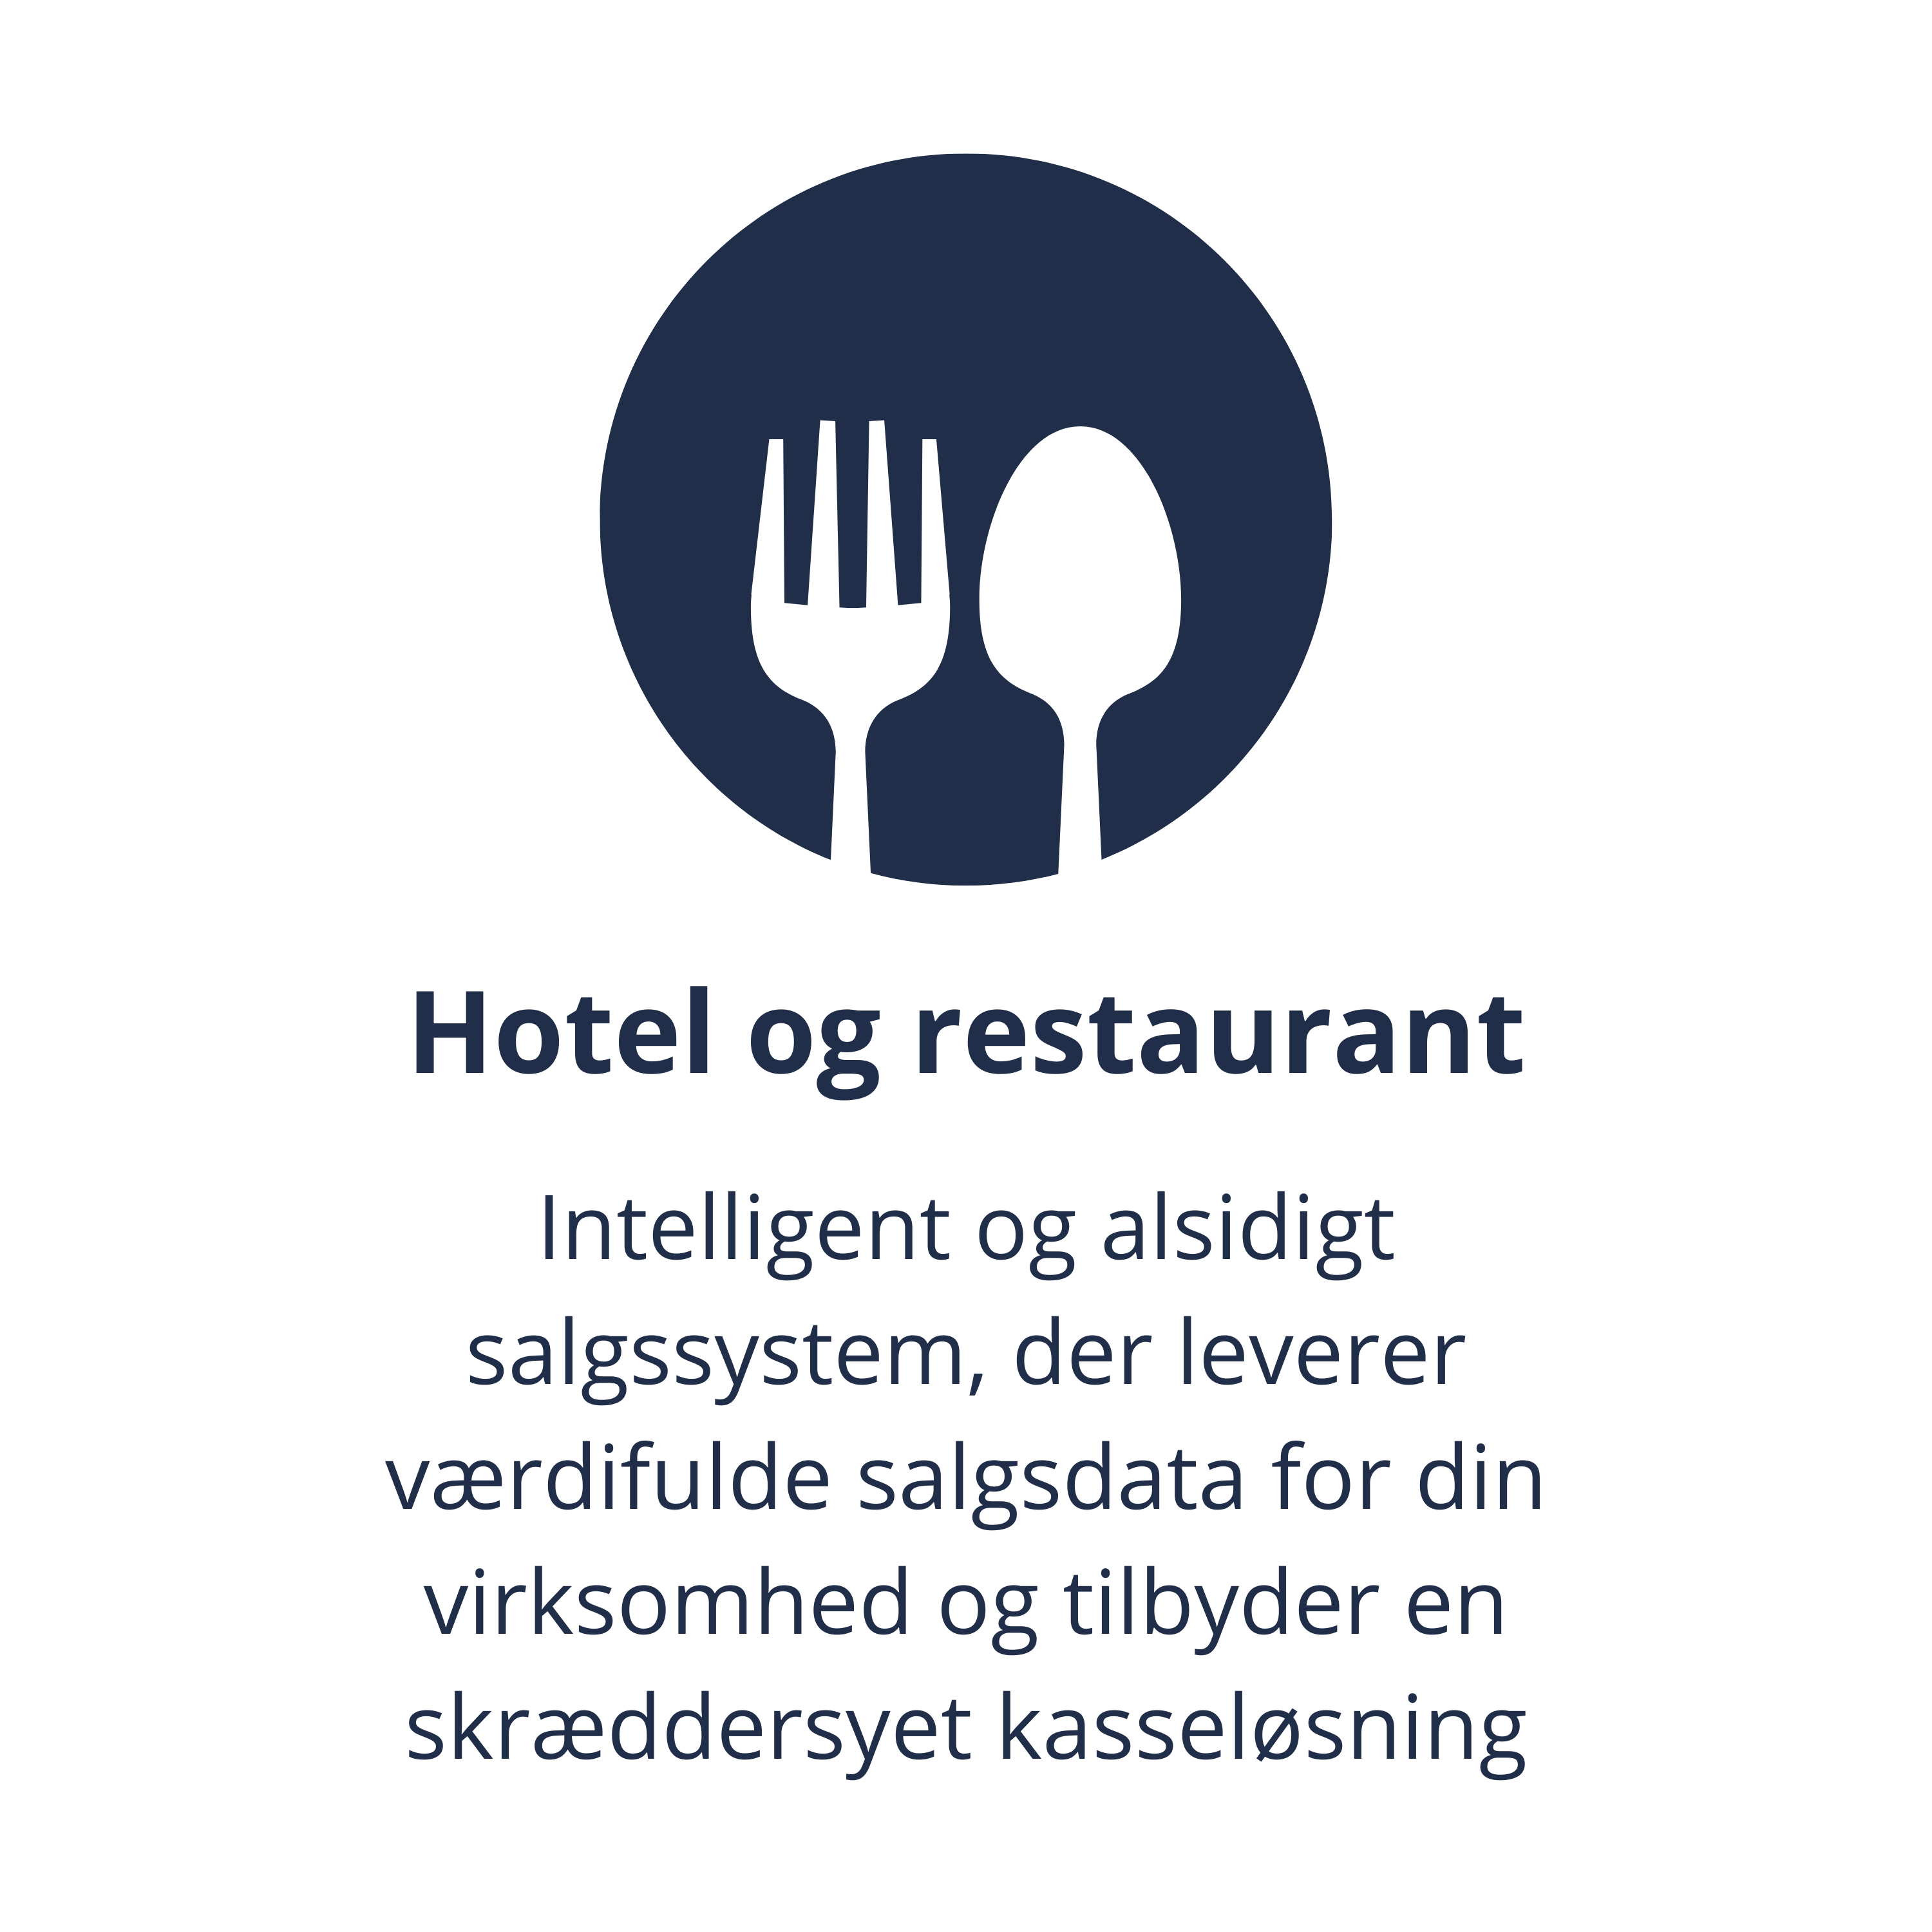 Hotel og restaurant